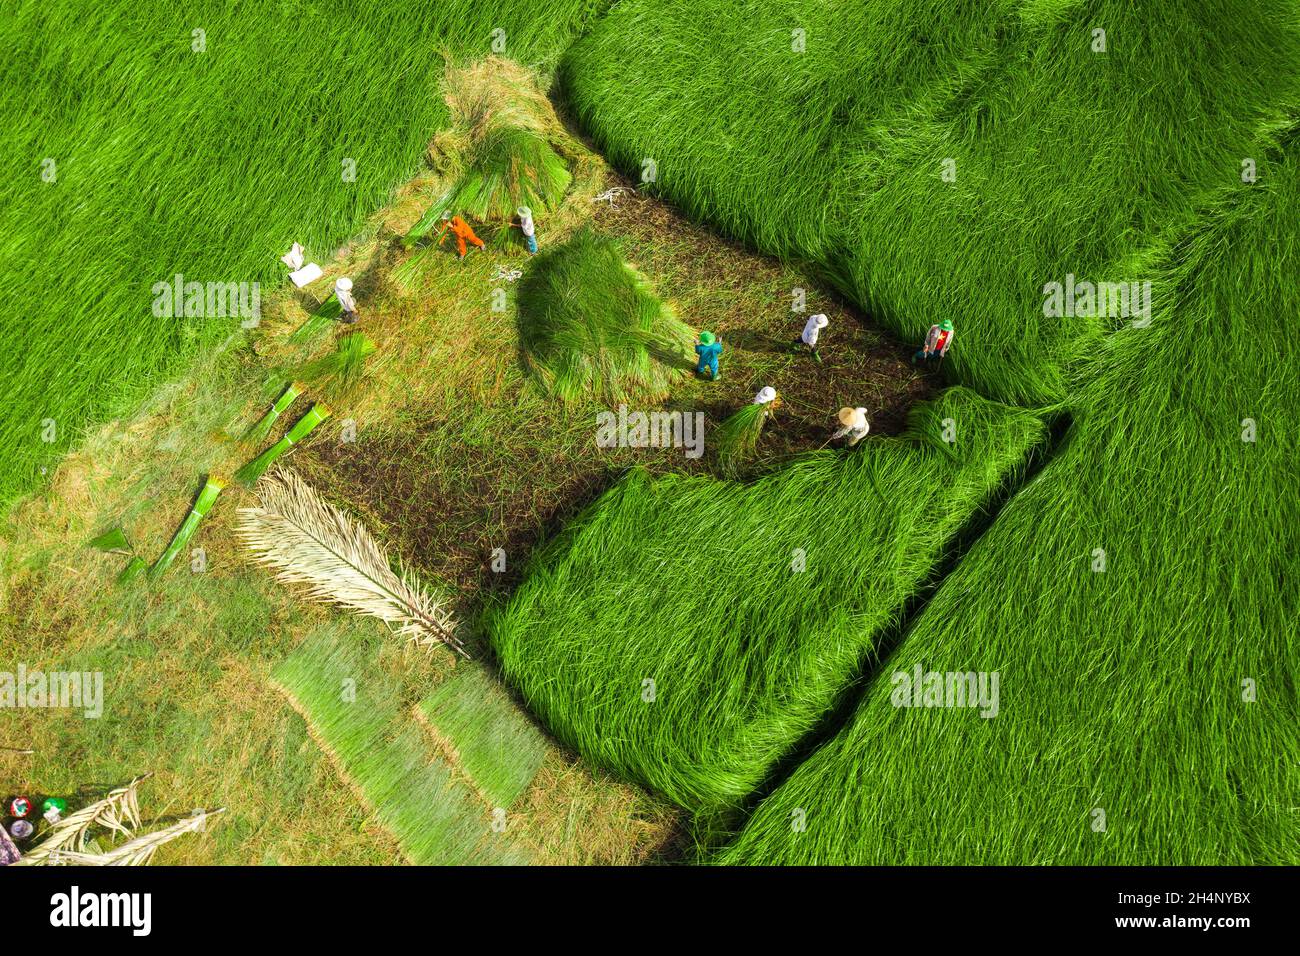 Die Bauern ernten im größten Sedge-Feld in Vietnam Sedge-Pflanzen. Fotos von oben Stockfoto